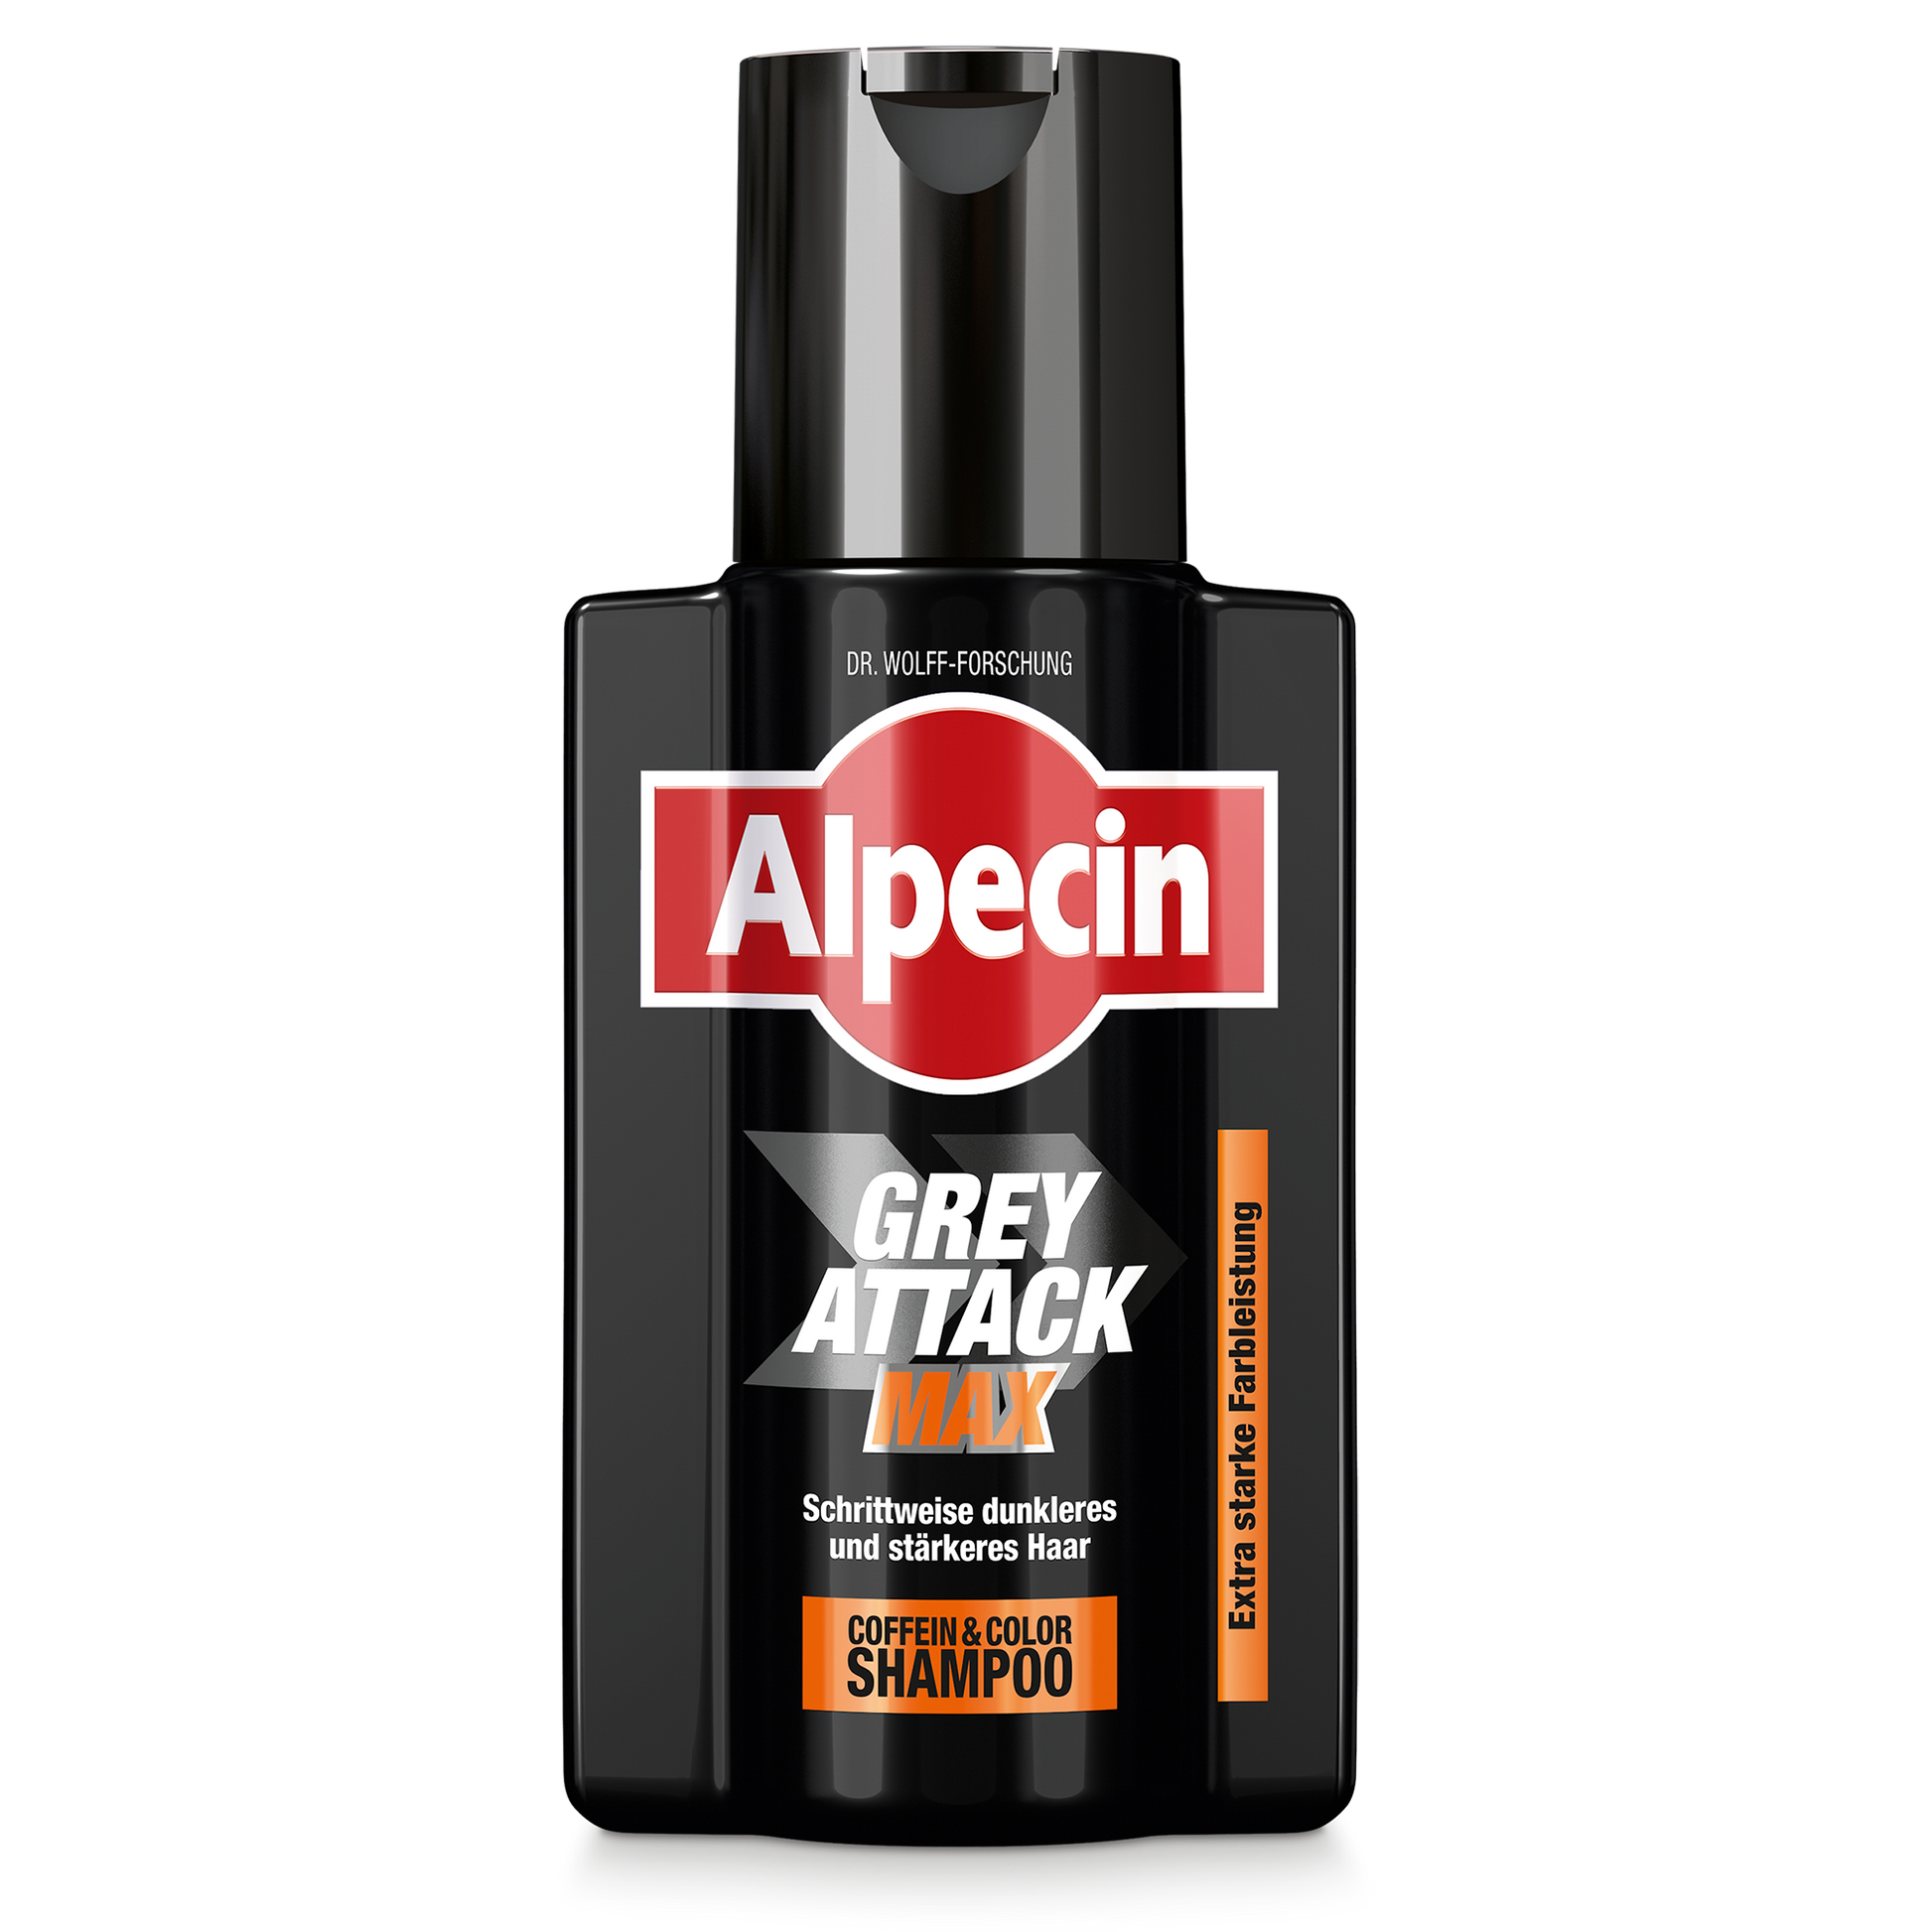 Flaschenabbildung des Grey Attack MAX mit dem Produktnamen, der Marke Alpecin und zusätzliche Benamungen des Shampoos